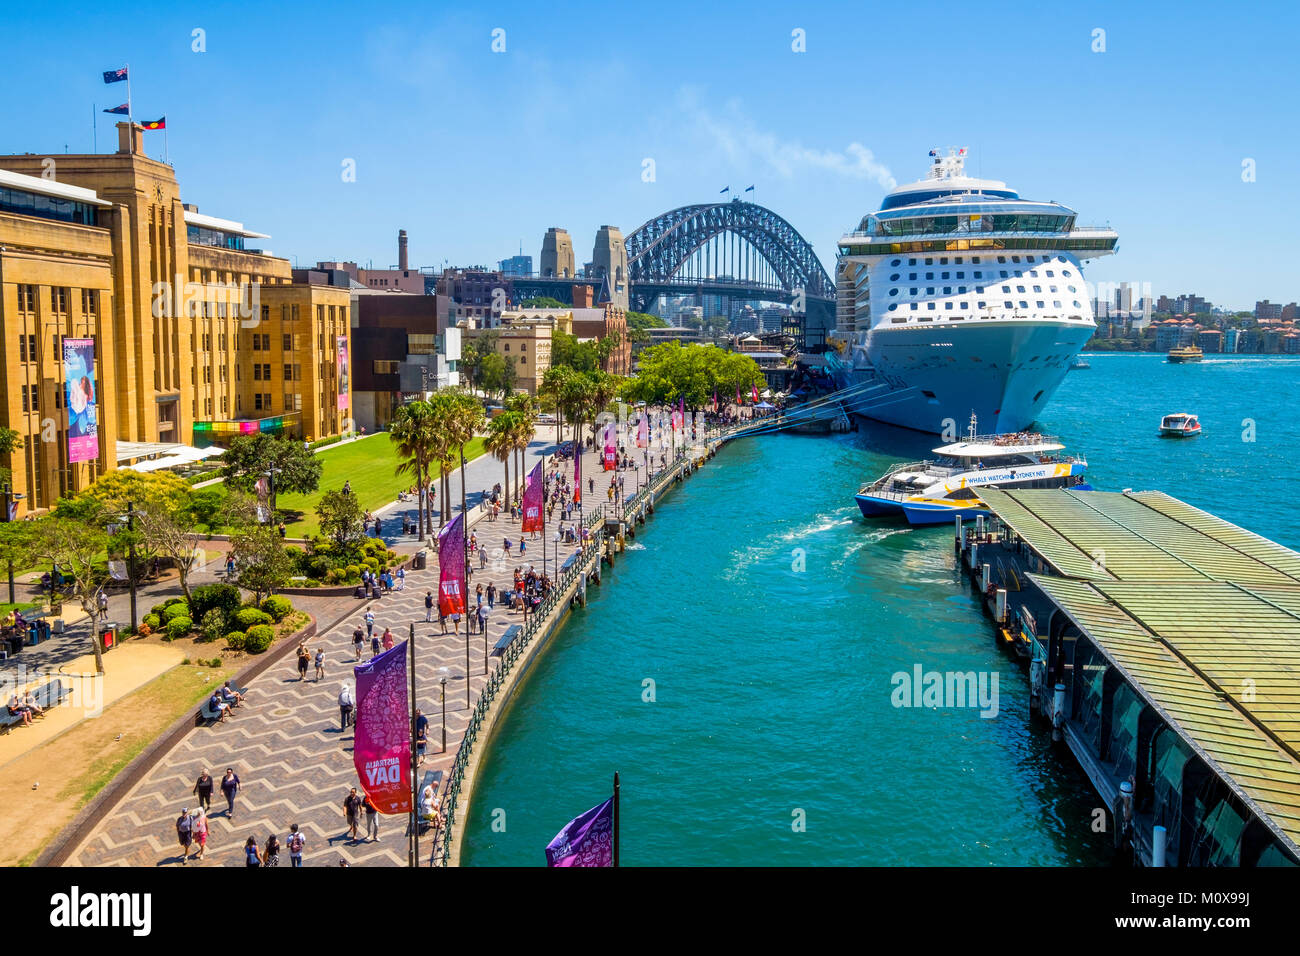 Royal Caribbean è ovazione dei mari nave da crociera ormeggiata al Terminal Passeggeri Oltreoceano in Circular Quay, Sydney, Australia in una giornata di sole. Foto Stock